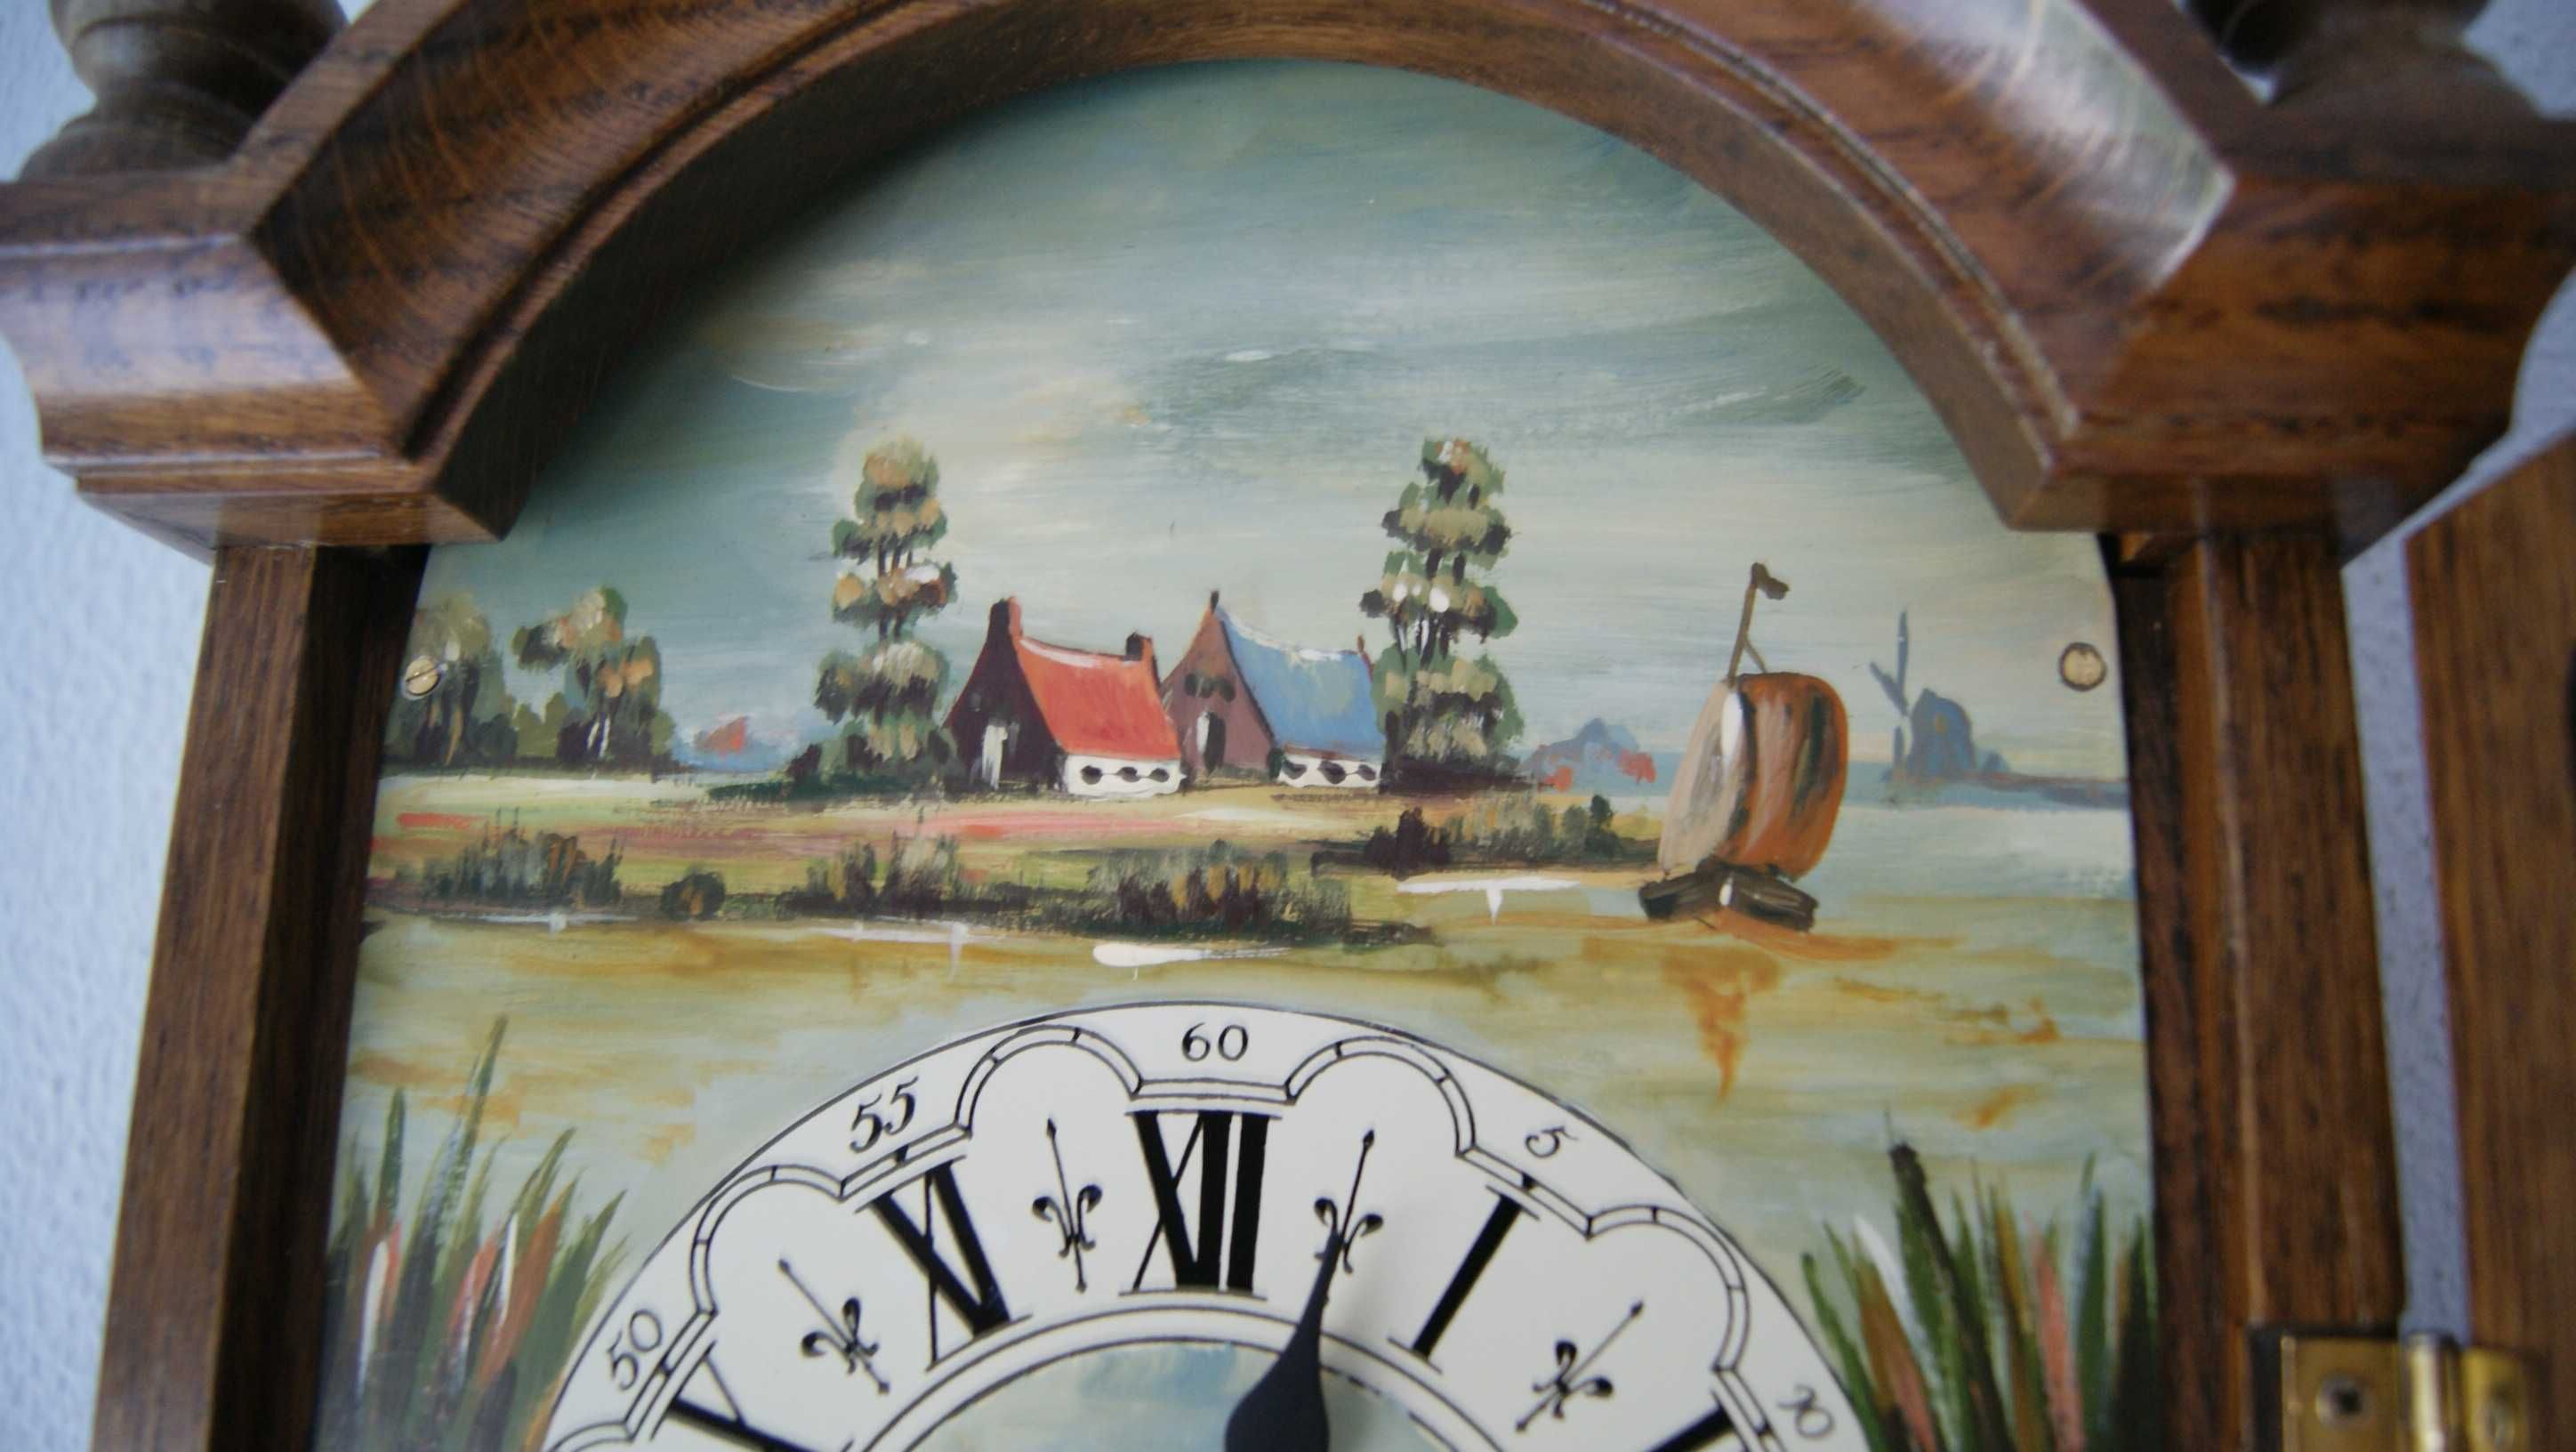 271 Zegar mechaniczny Hermle (FHS C) ręcznie malowana tarcza